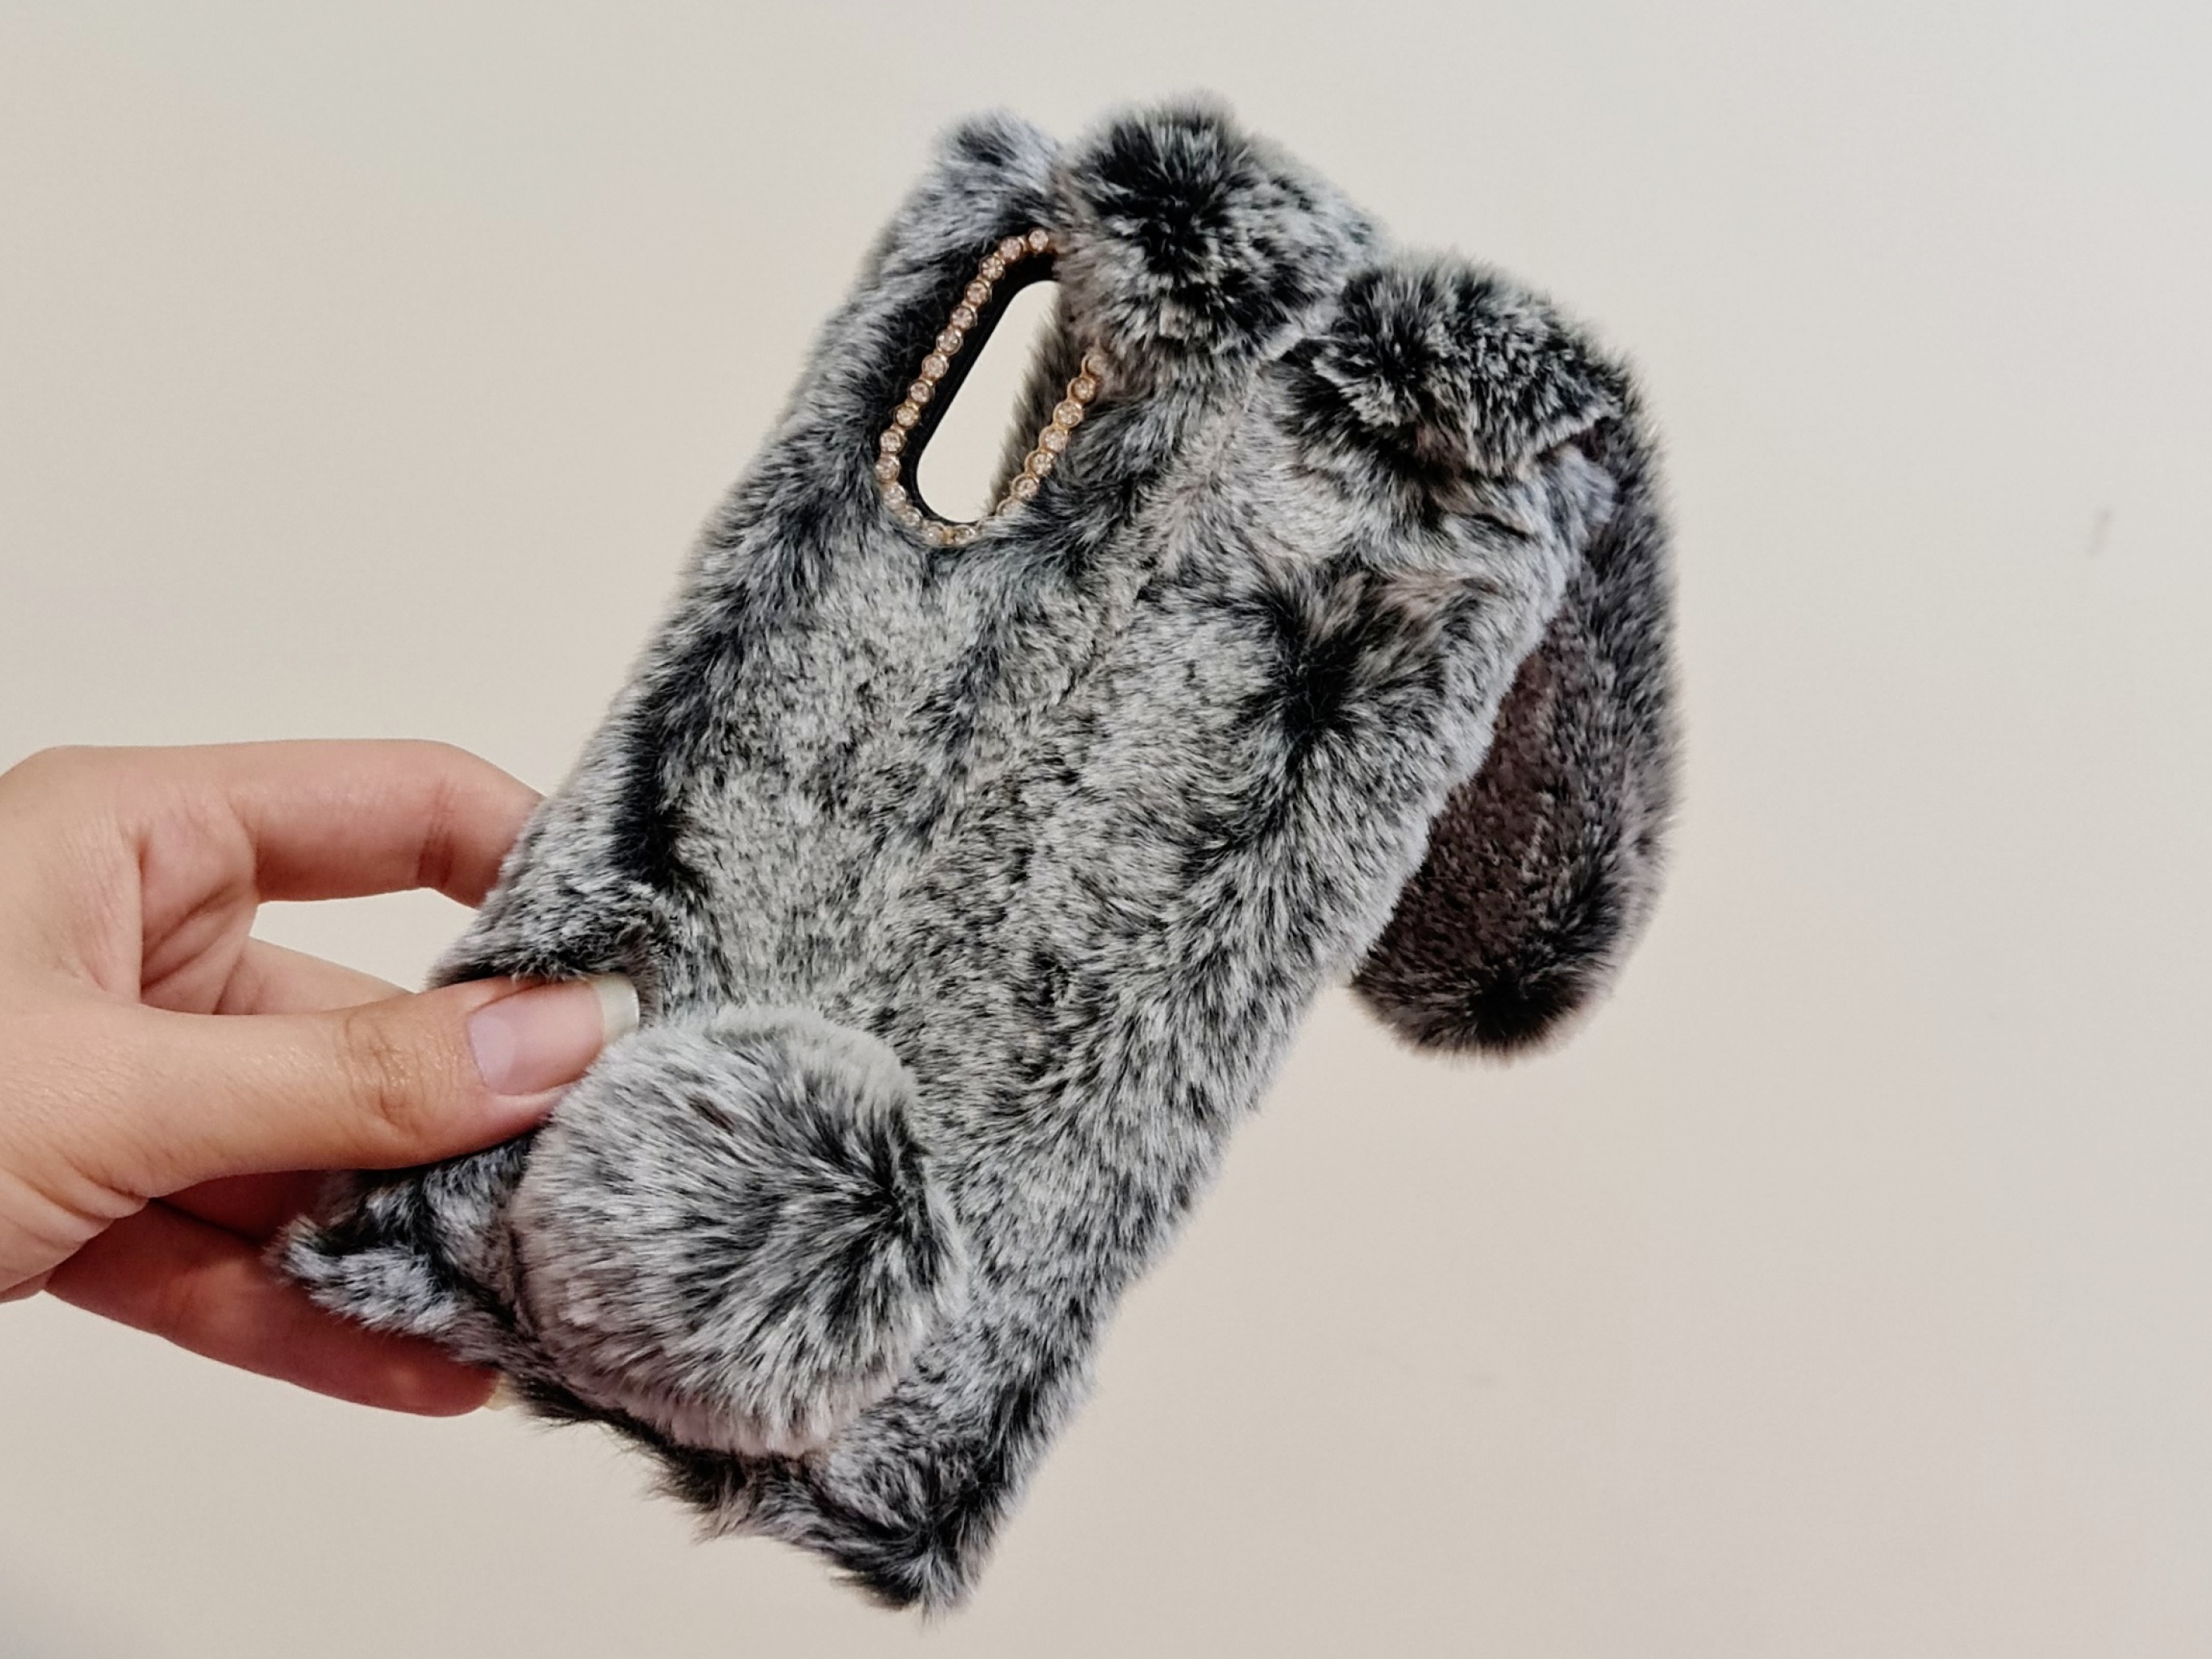  گارد موبایل خرگوش پشمالو مناسب برای نوت ۱۰ پلاس 